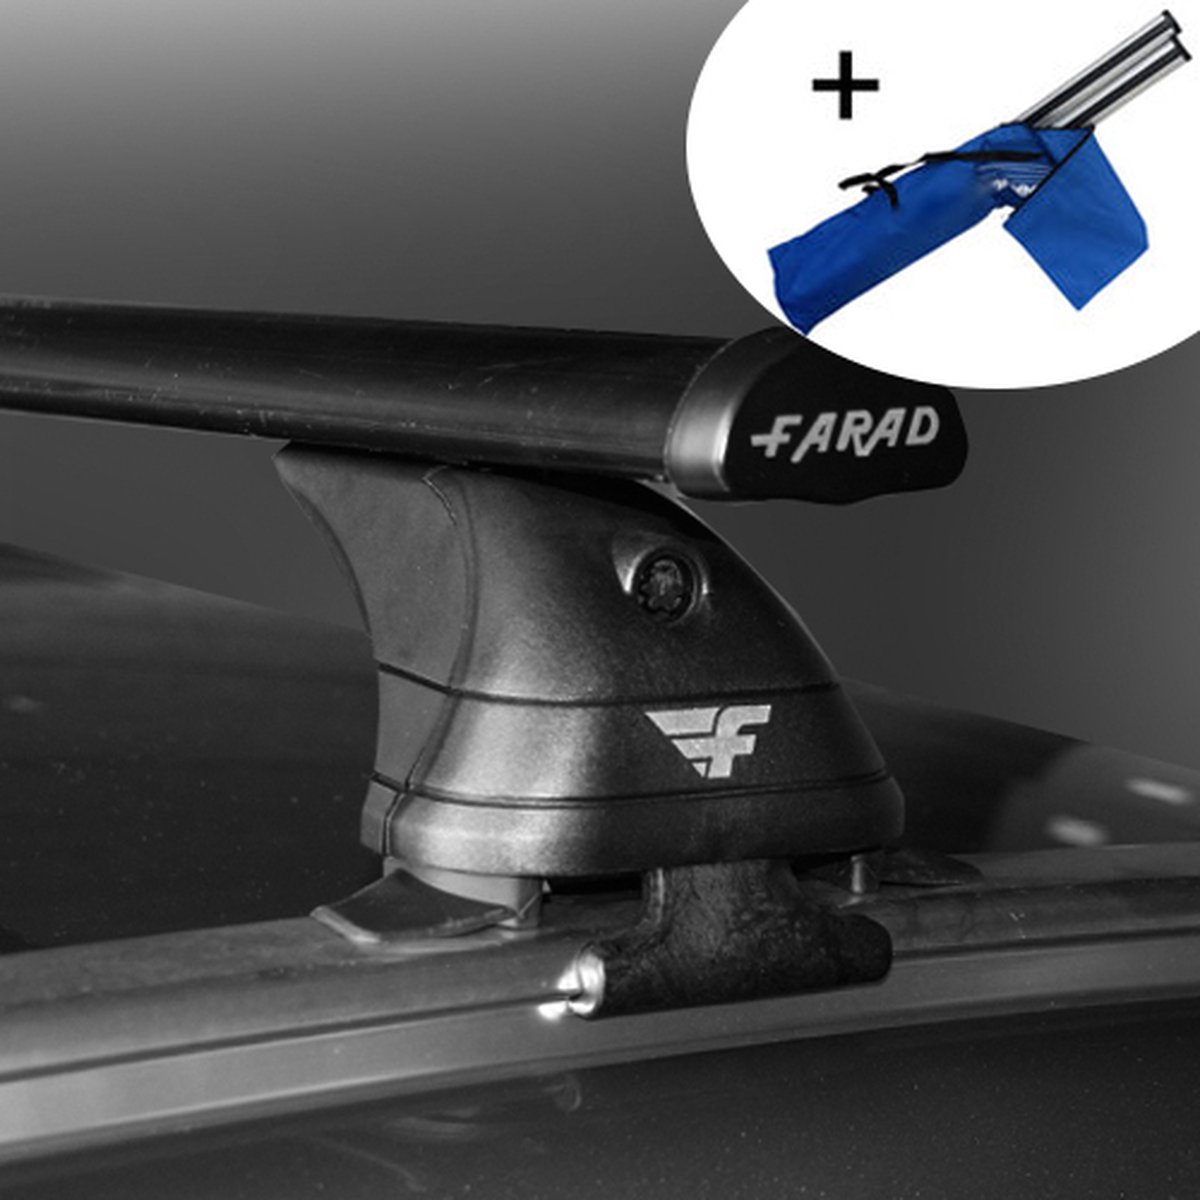 Dakdragers geschikt voor Seat Leon X-Perience 5 deurs hatchback vanaf 2015 - Staal - inclusief dakdrager opbergtas